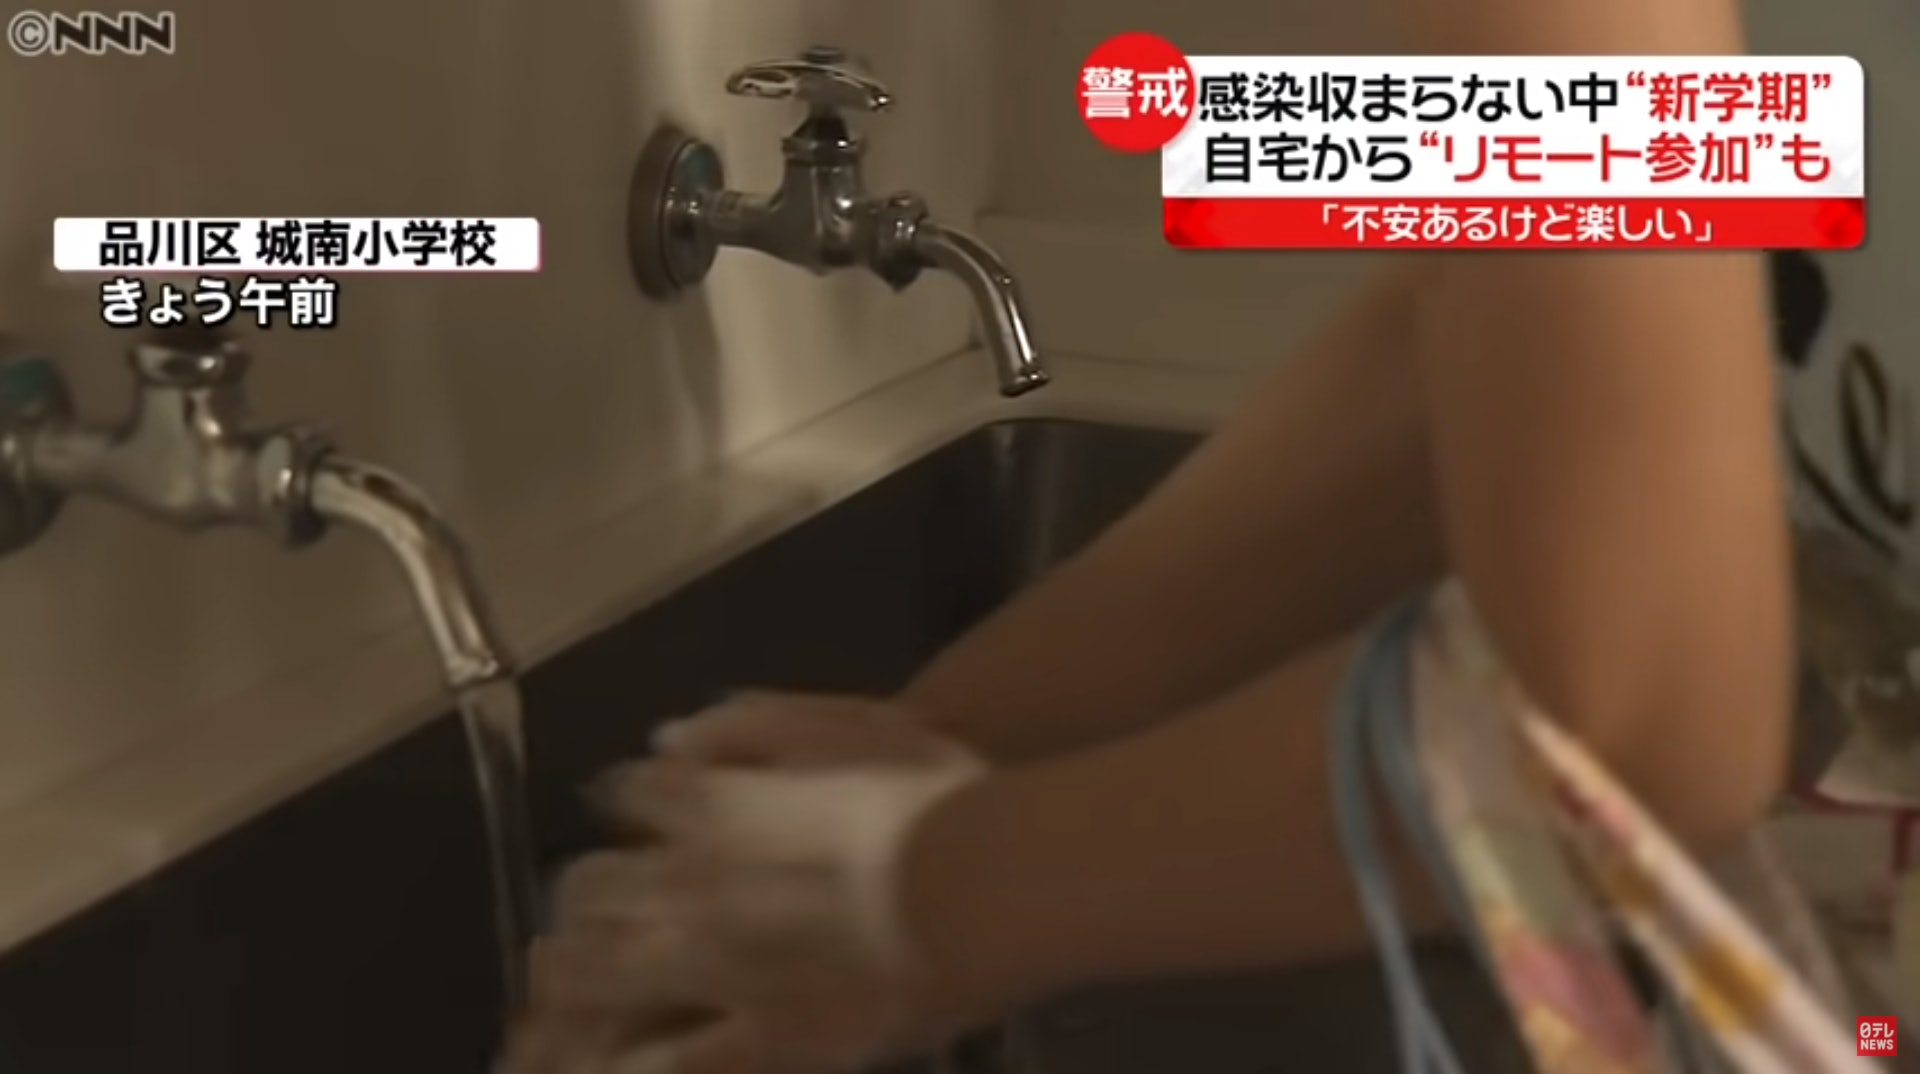 日本的学校促进了“假设”的流行病和小学提交了一个大投诉：被迫面对食物